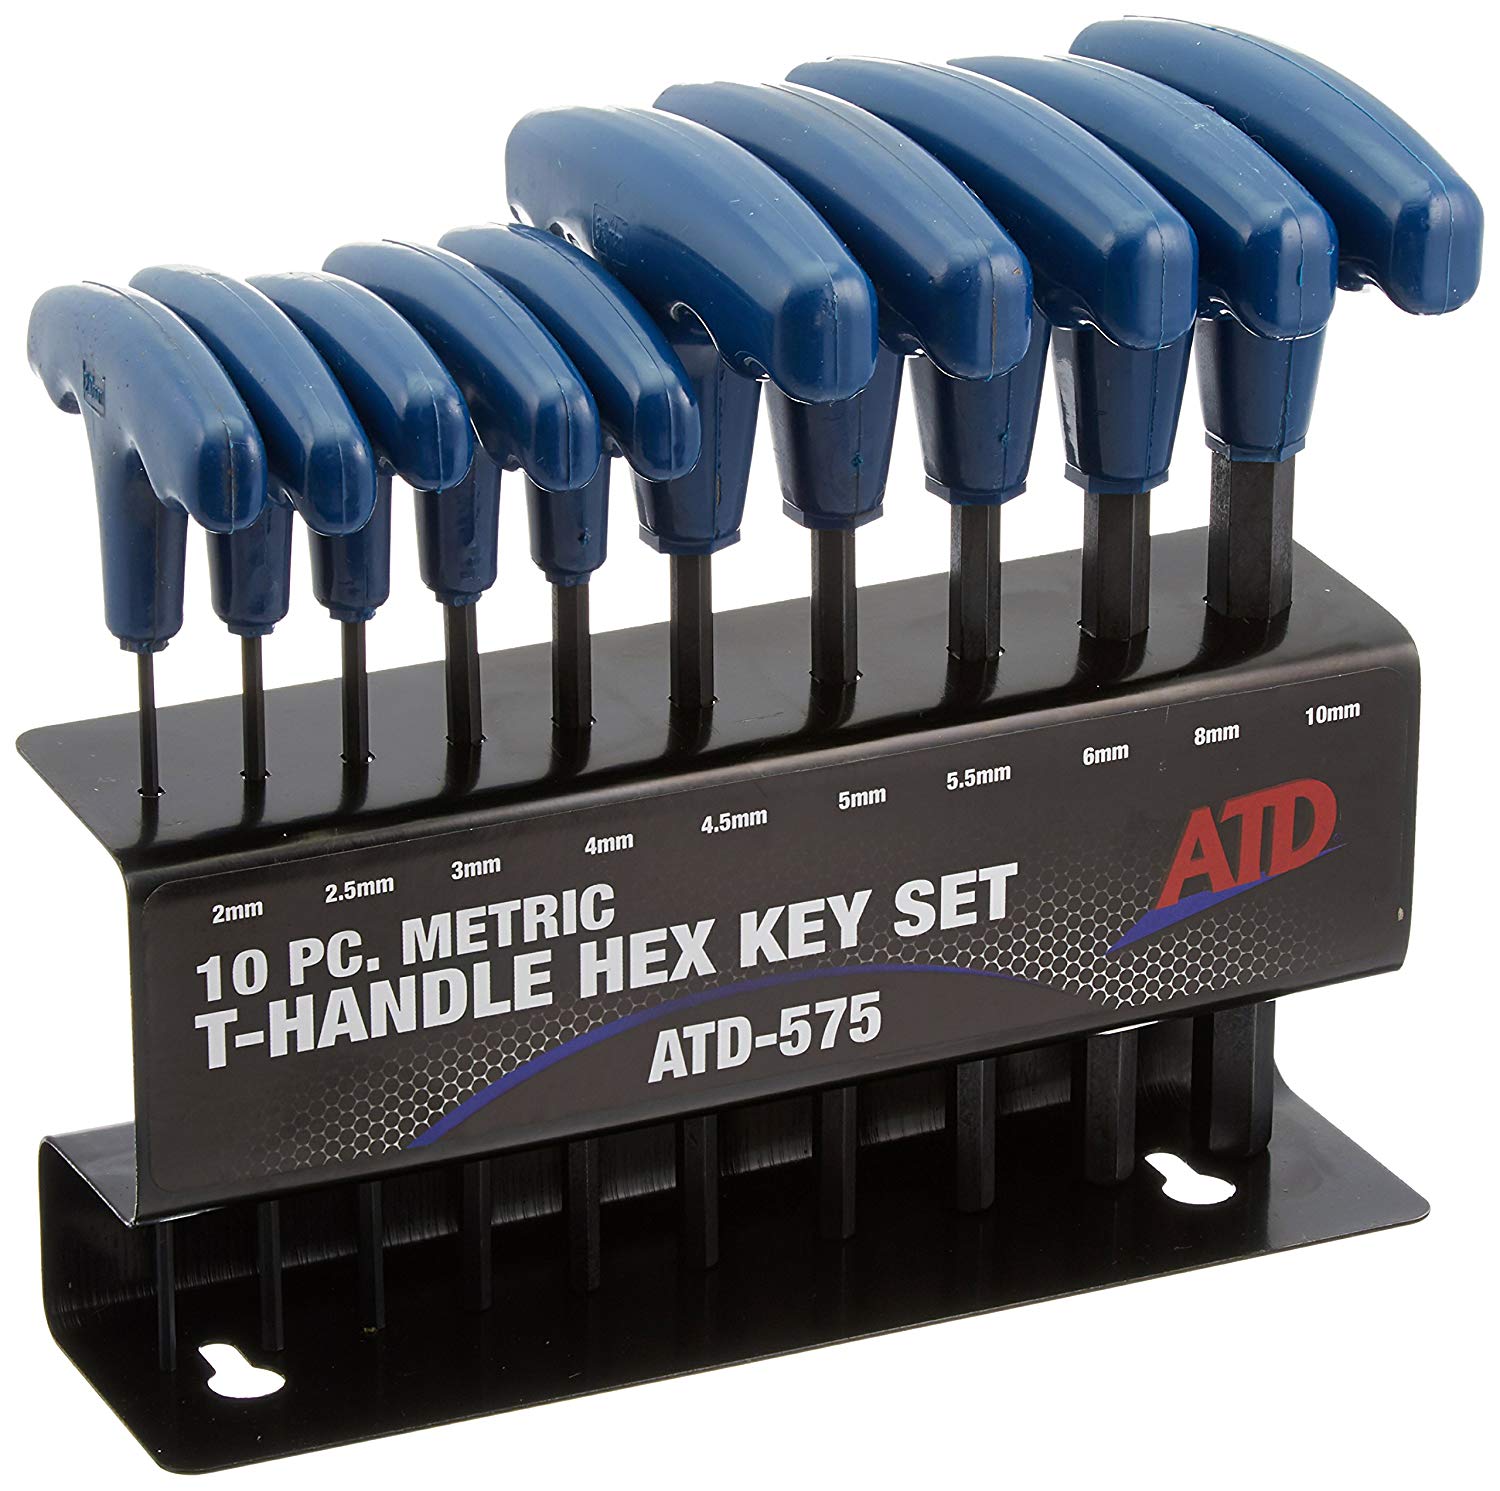 T-Handle Key Set 3D Print General